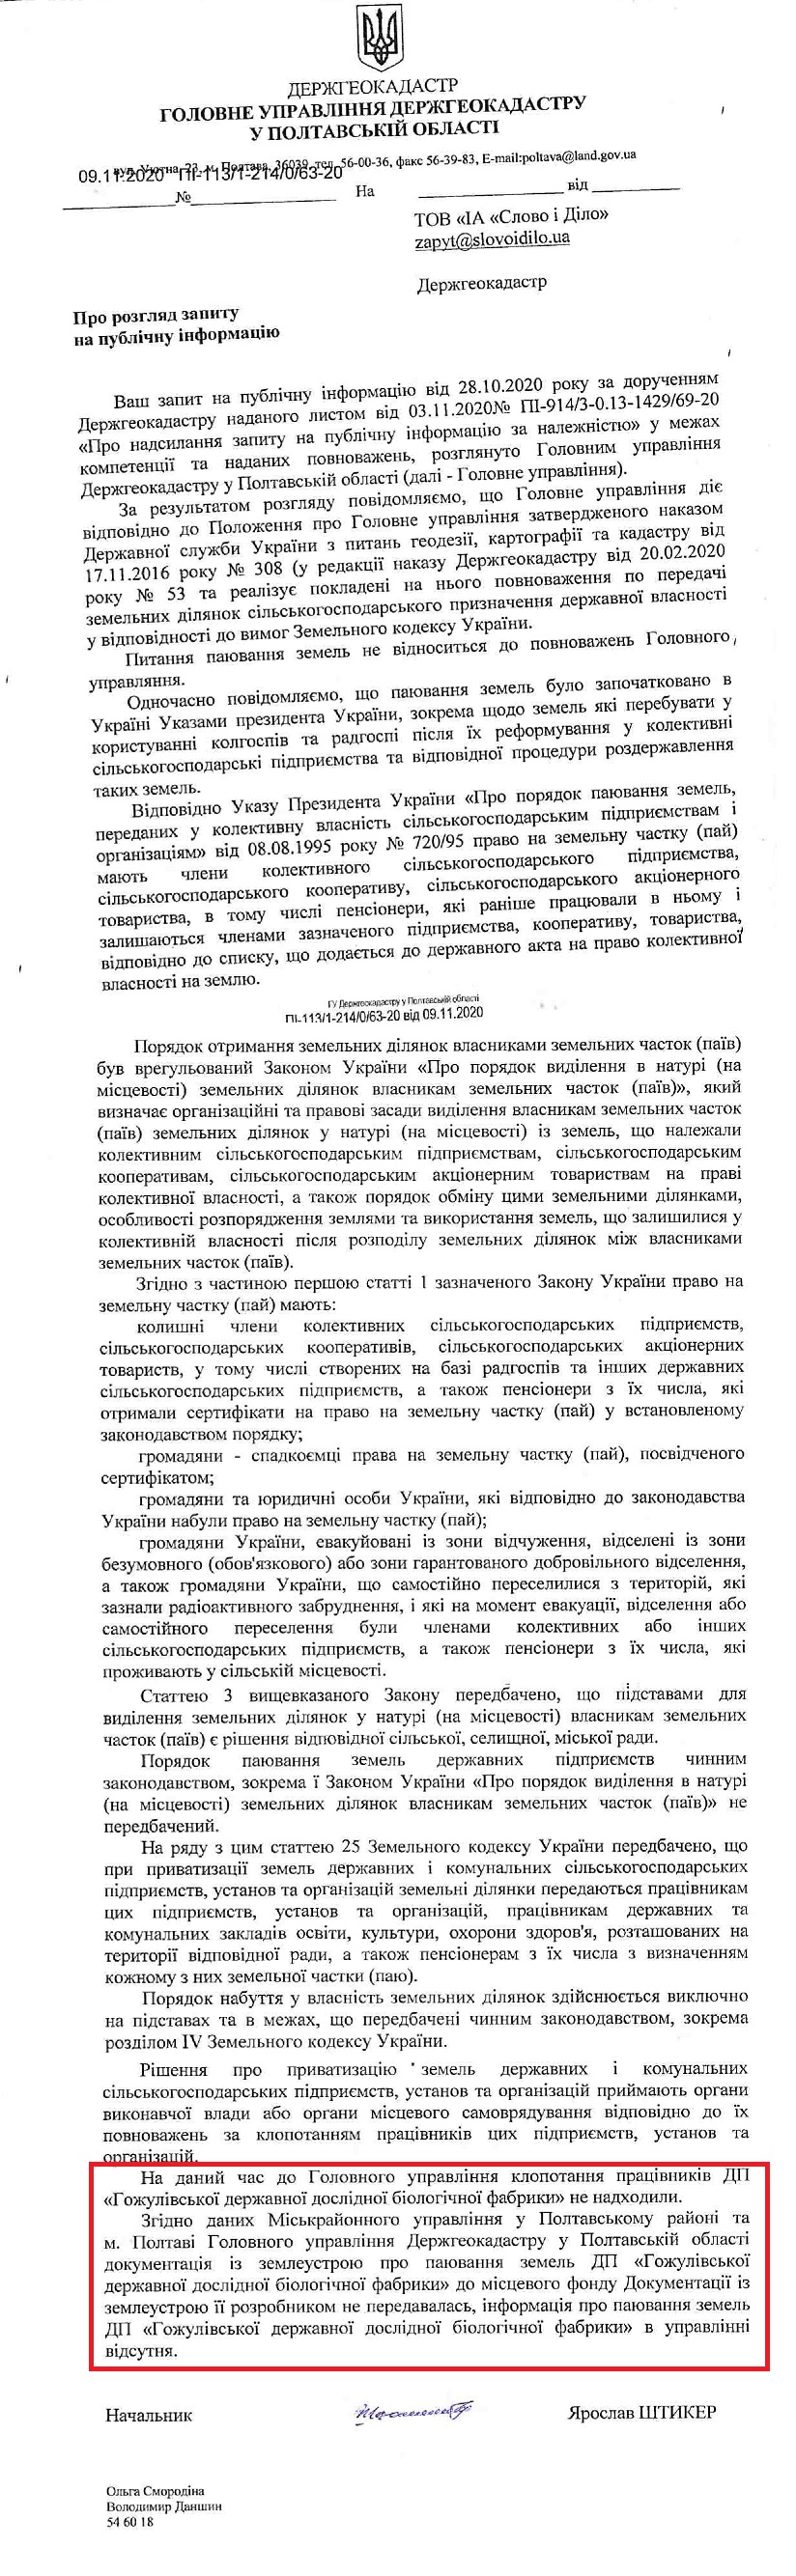 Лист ГУ Держгеокадастру в Полтавській області